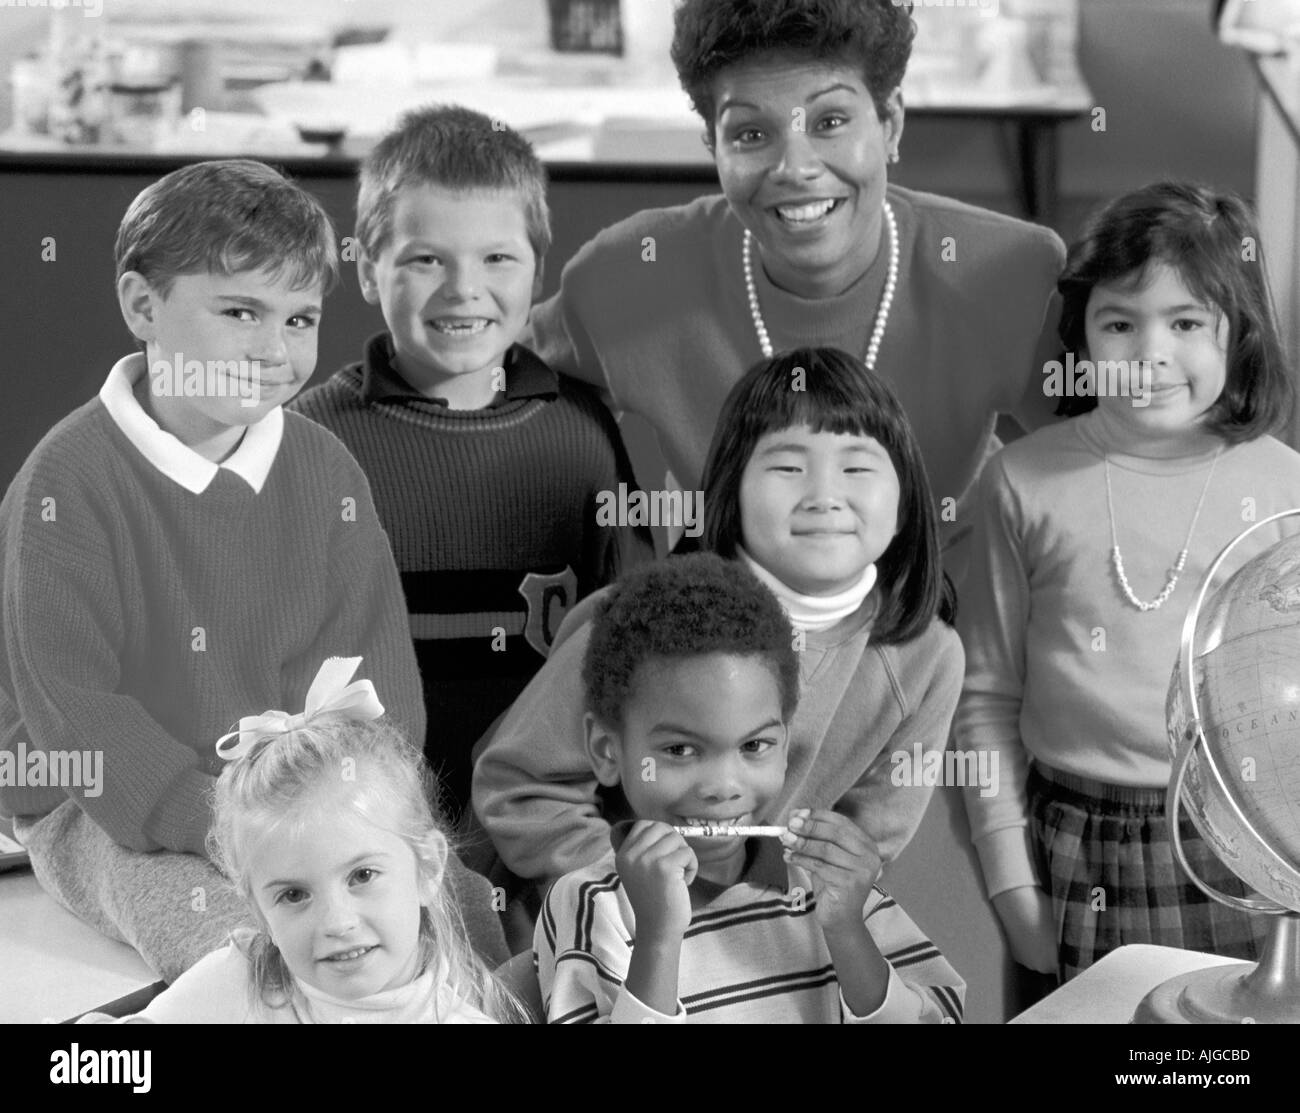 Schwarz-weiß-Porträt der afrikanischen amerikanischen Lehrer mit African American, Latino, kaukasischen und asiatischen Studenten in der Grundschule Klasse Stockfoto